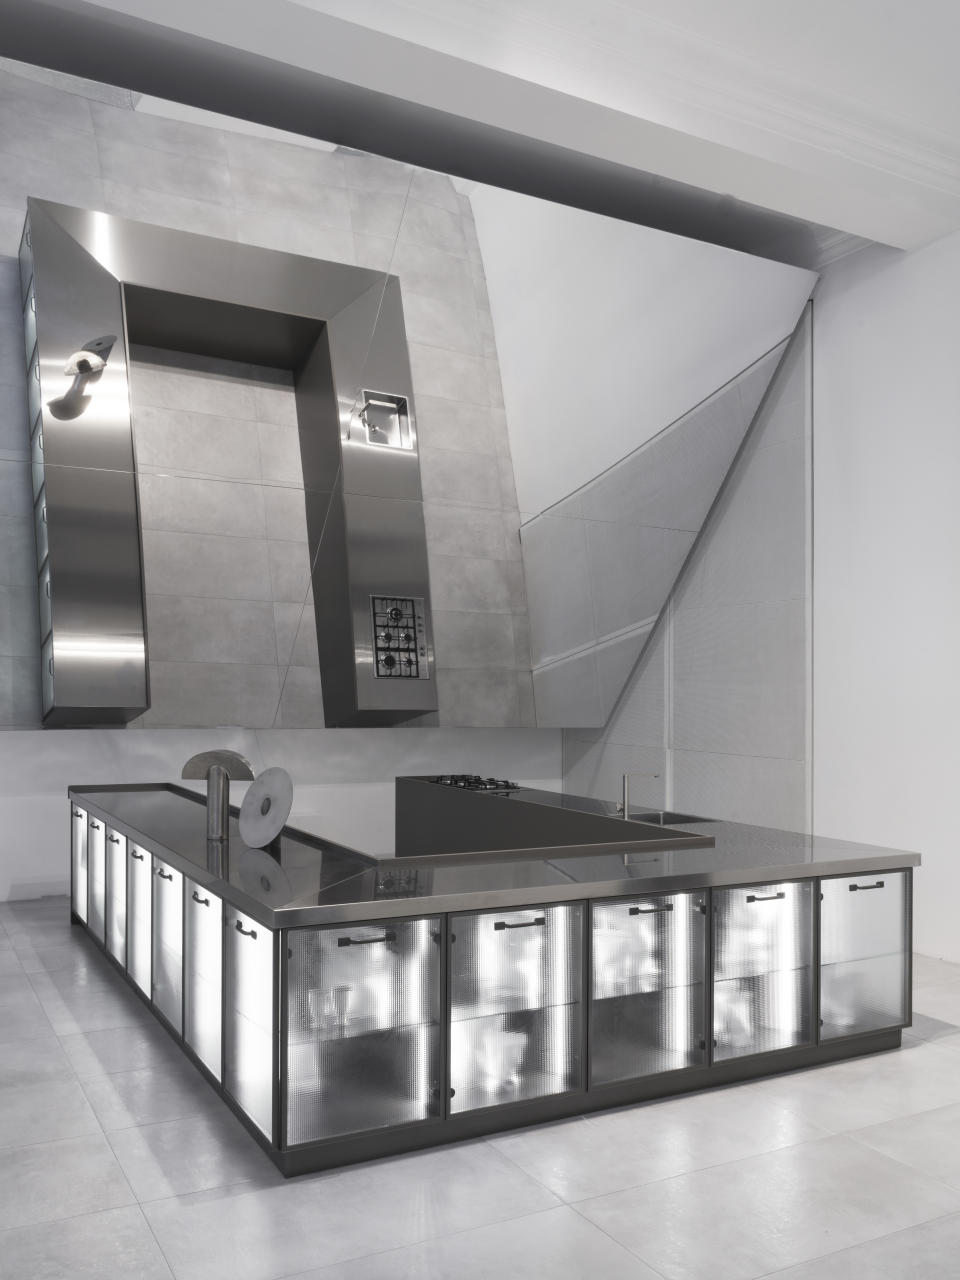 Diesel Scavolini modern kitchen